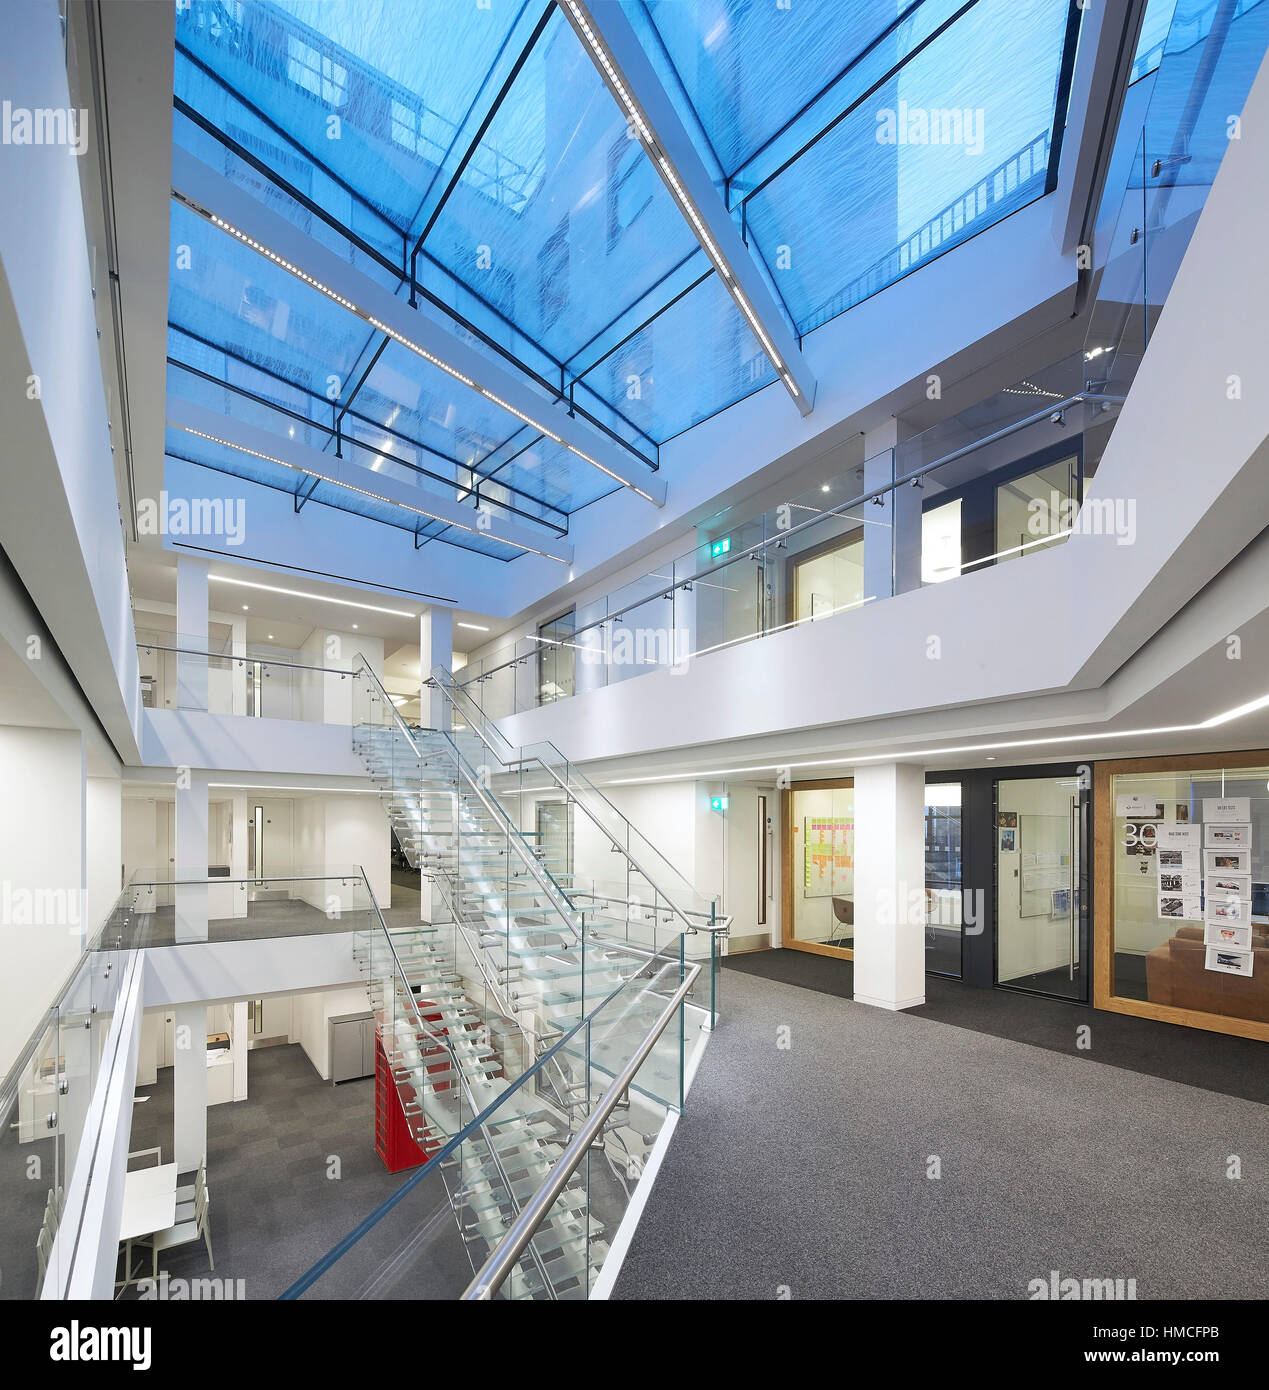 Vue d'ensemble de l'atrium en verre multi-niveaux avec des galeries, escaliers et entrées de bureau. 82 Baker Street, London, United Kingdom. Architecte : Barf Marques Banque D'Images